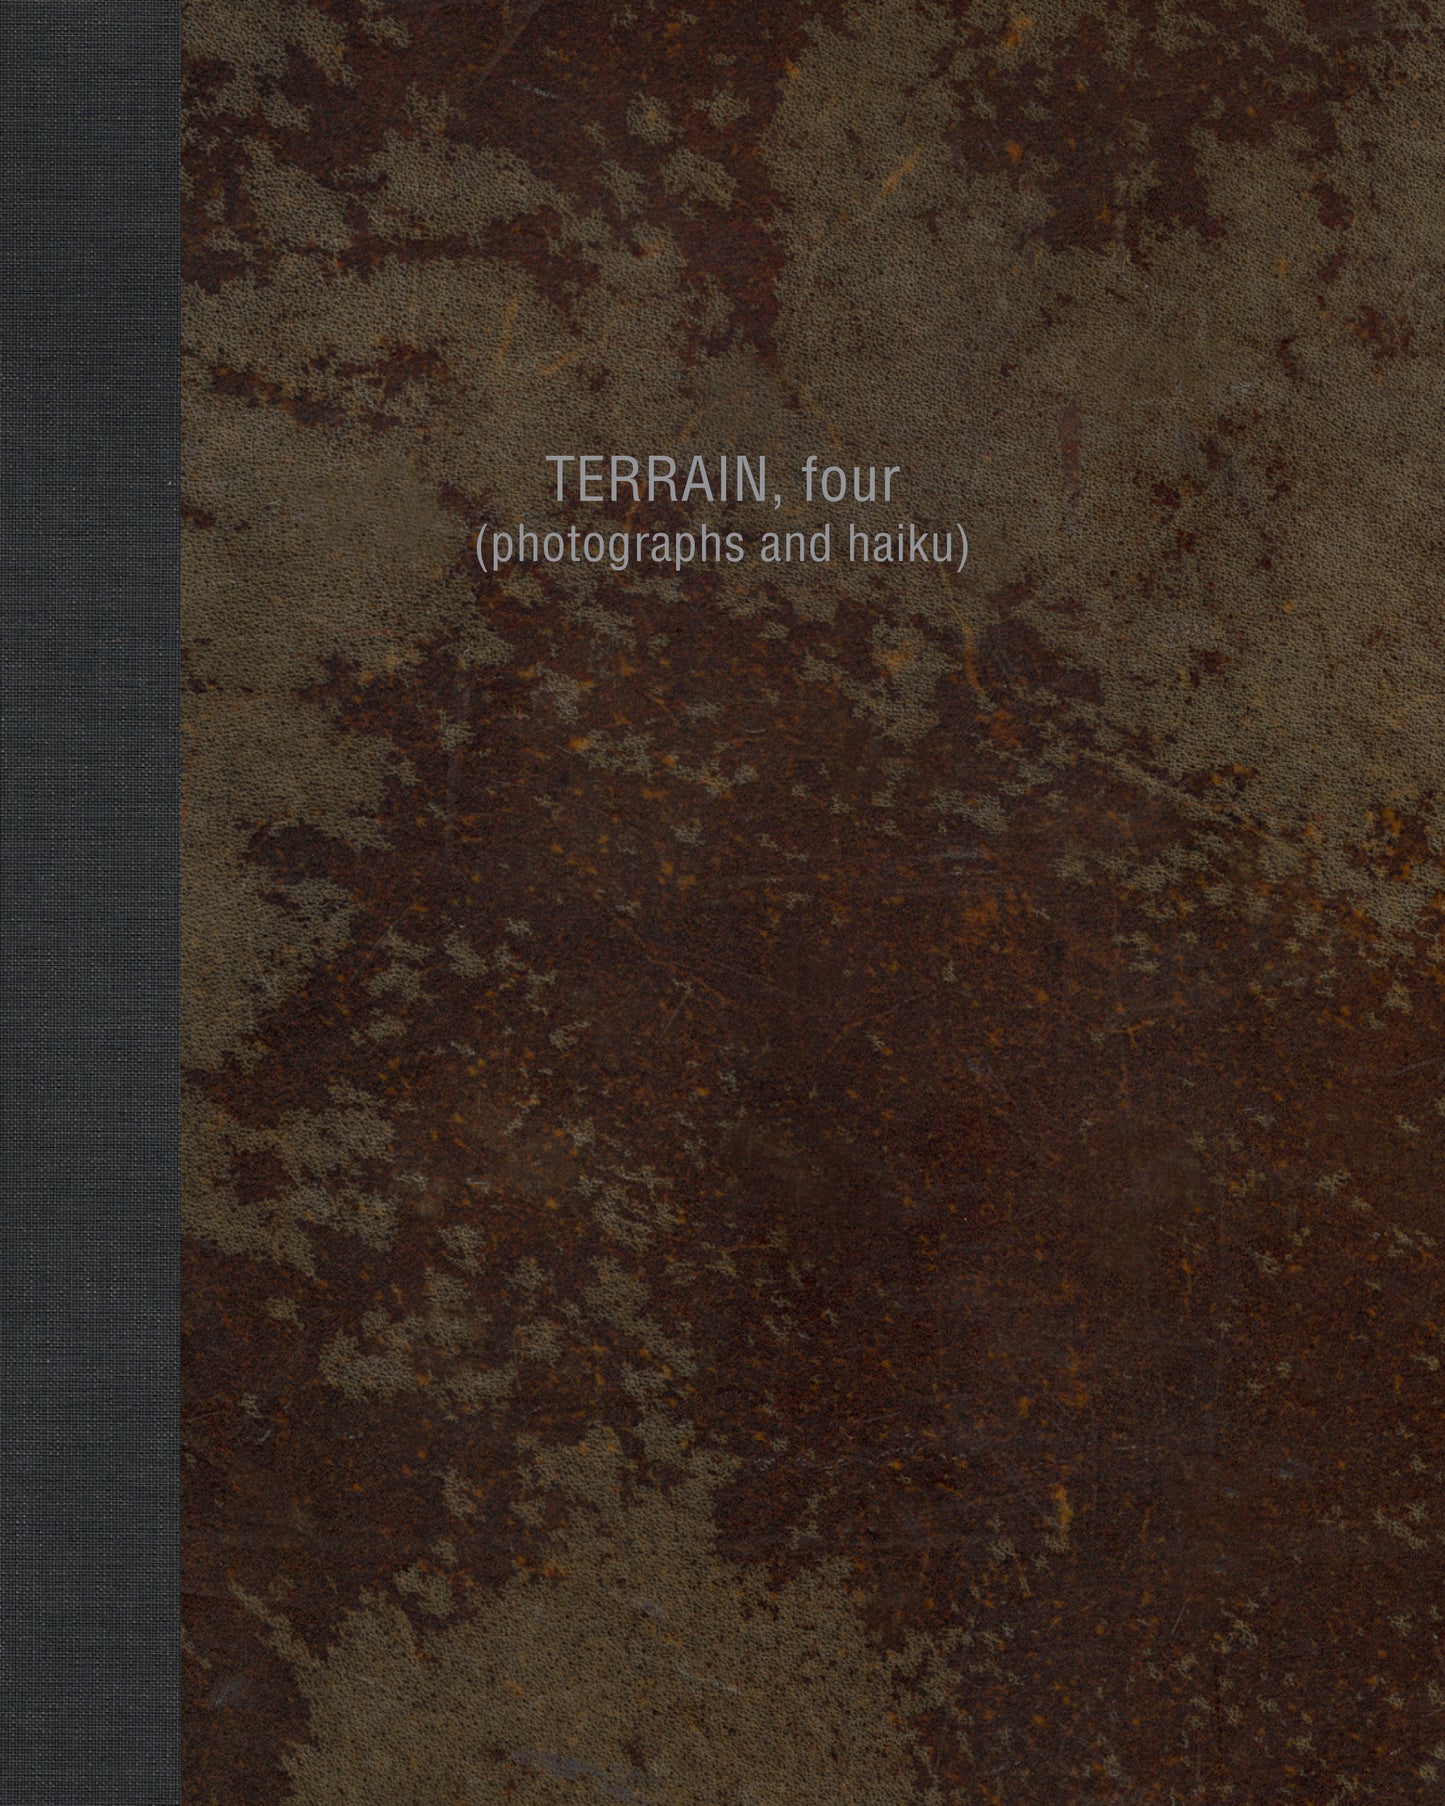 TERRAIN, four